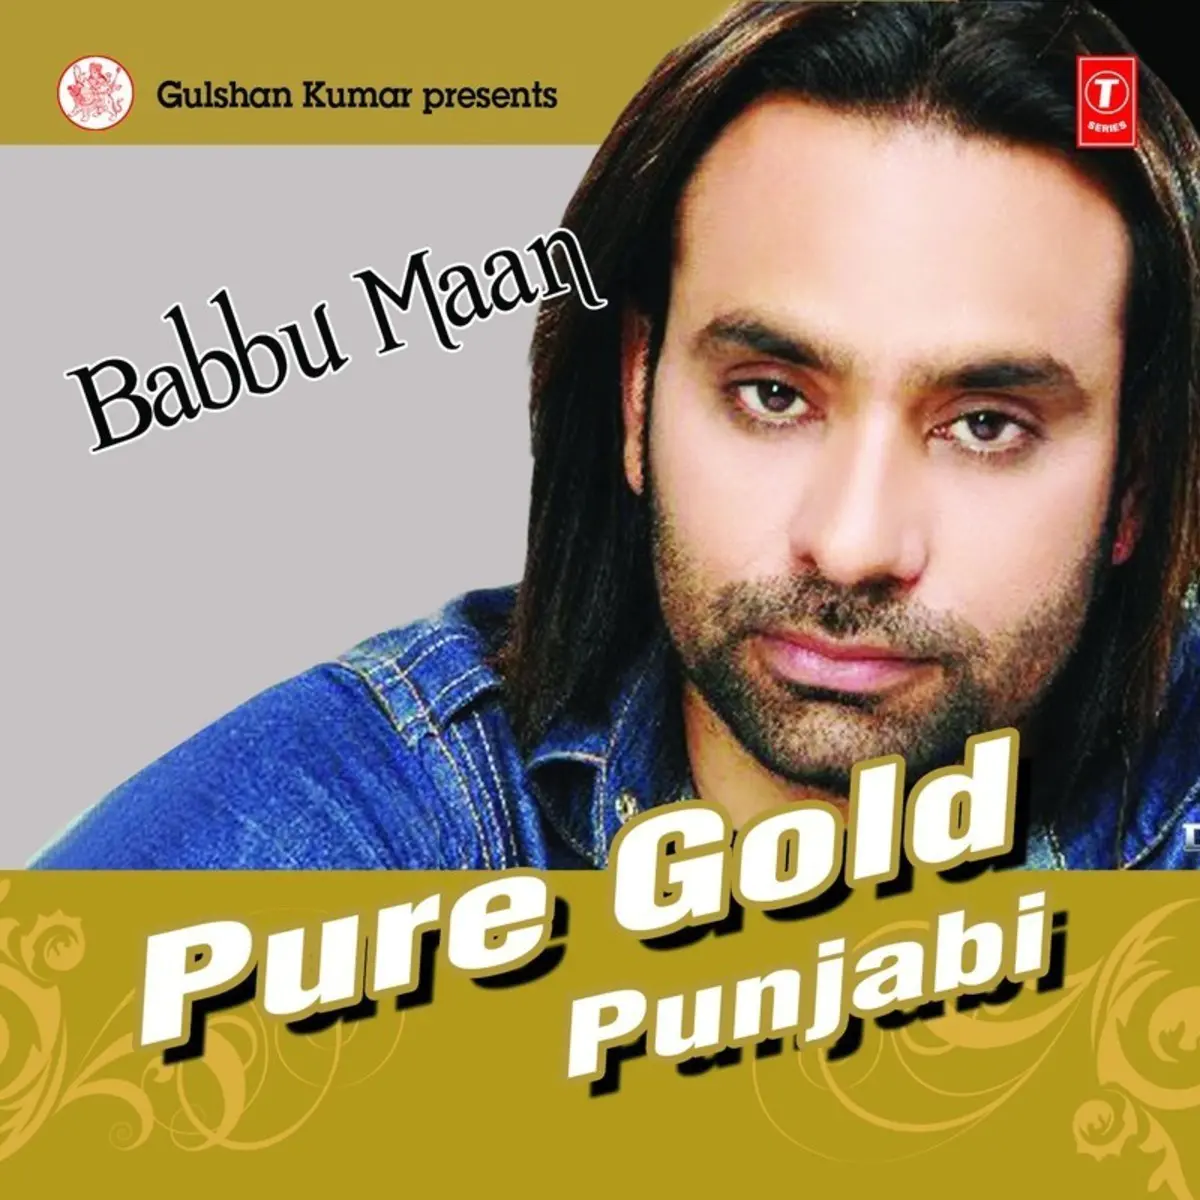 Punjab Mp3 Song Download Pure Gold Punjabi Babbu Maan Punjab